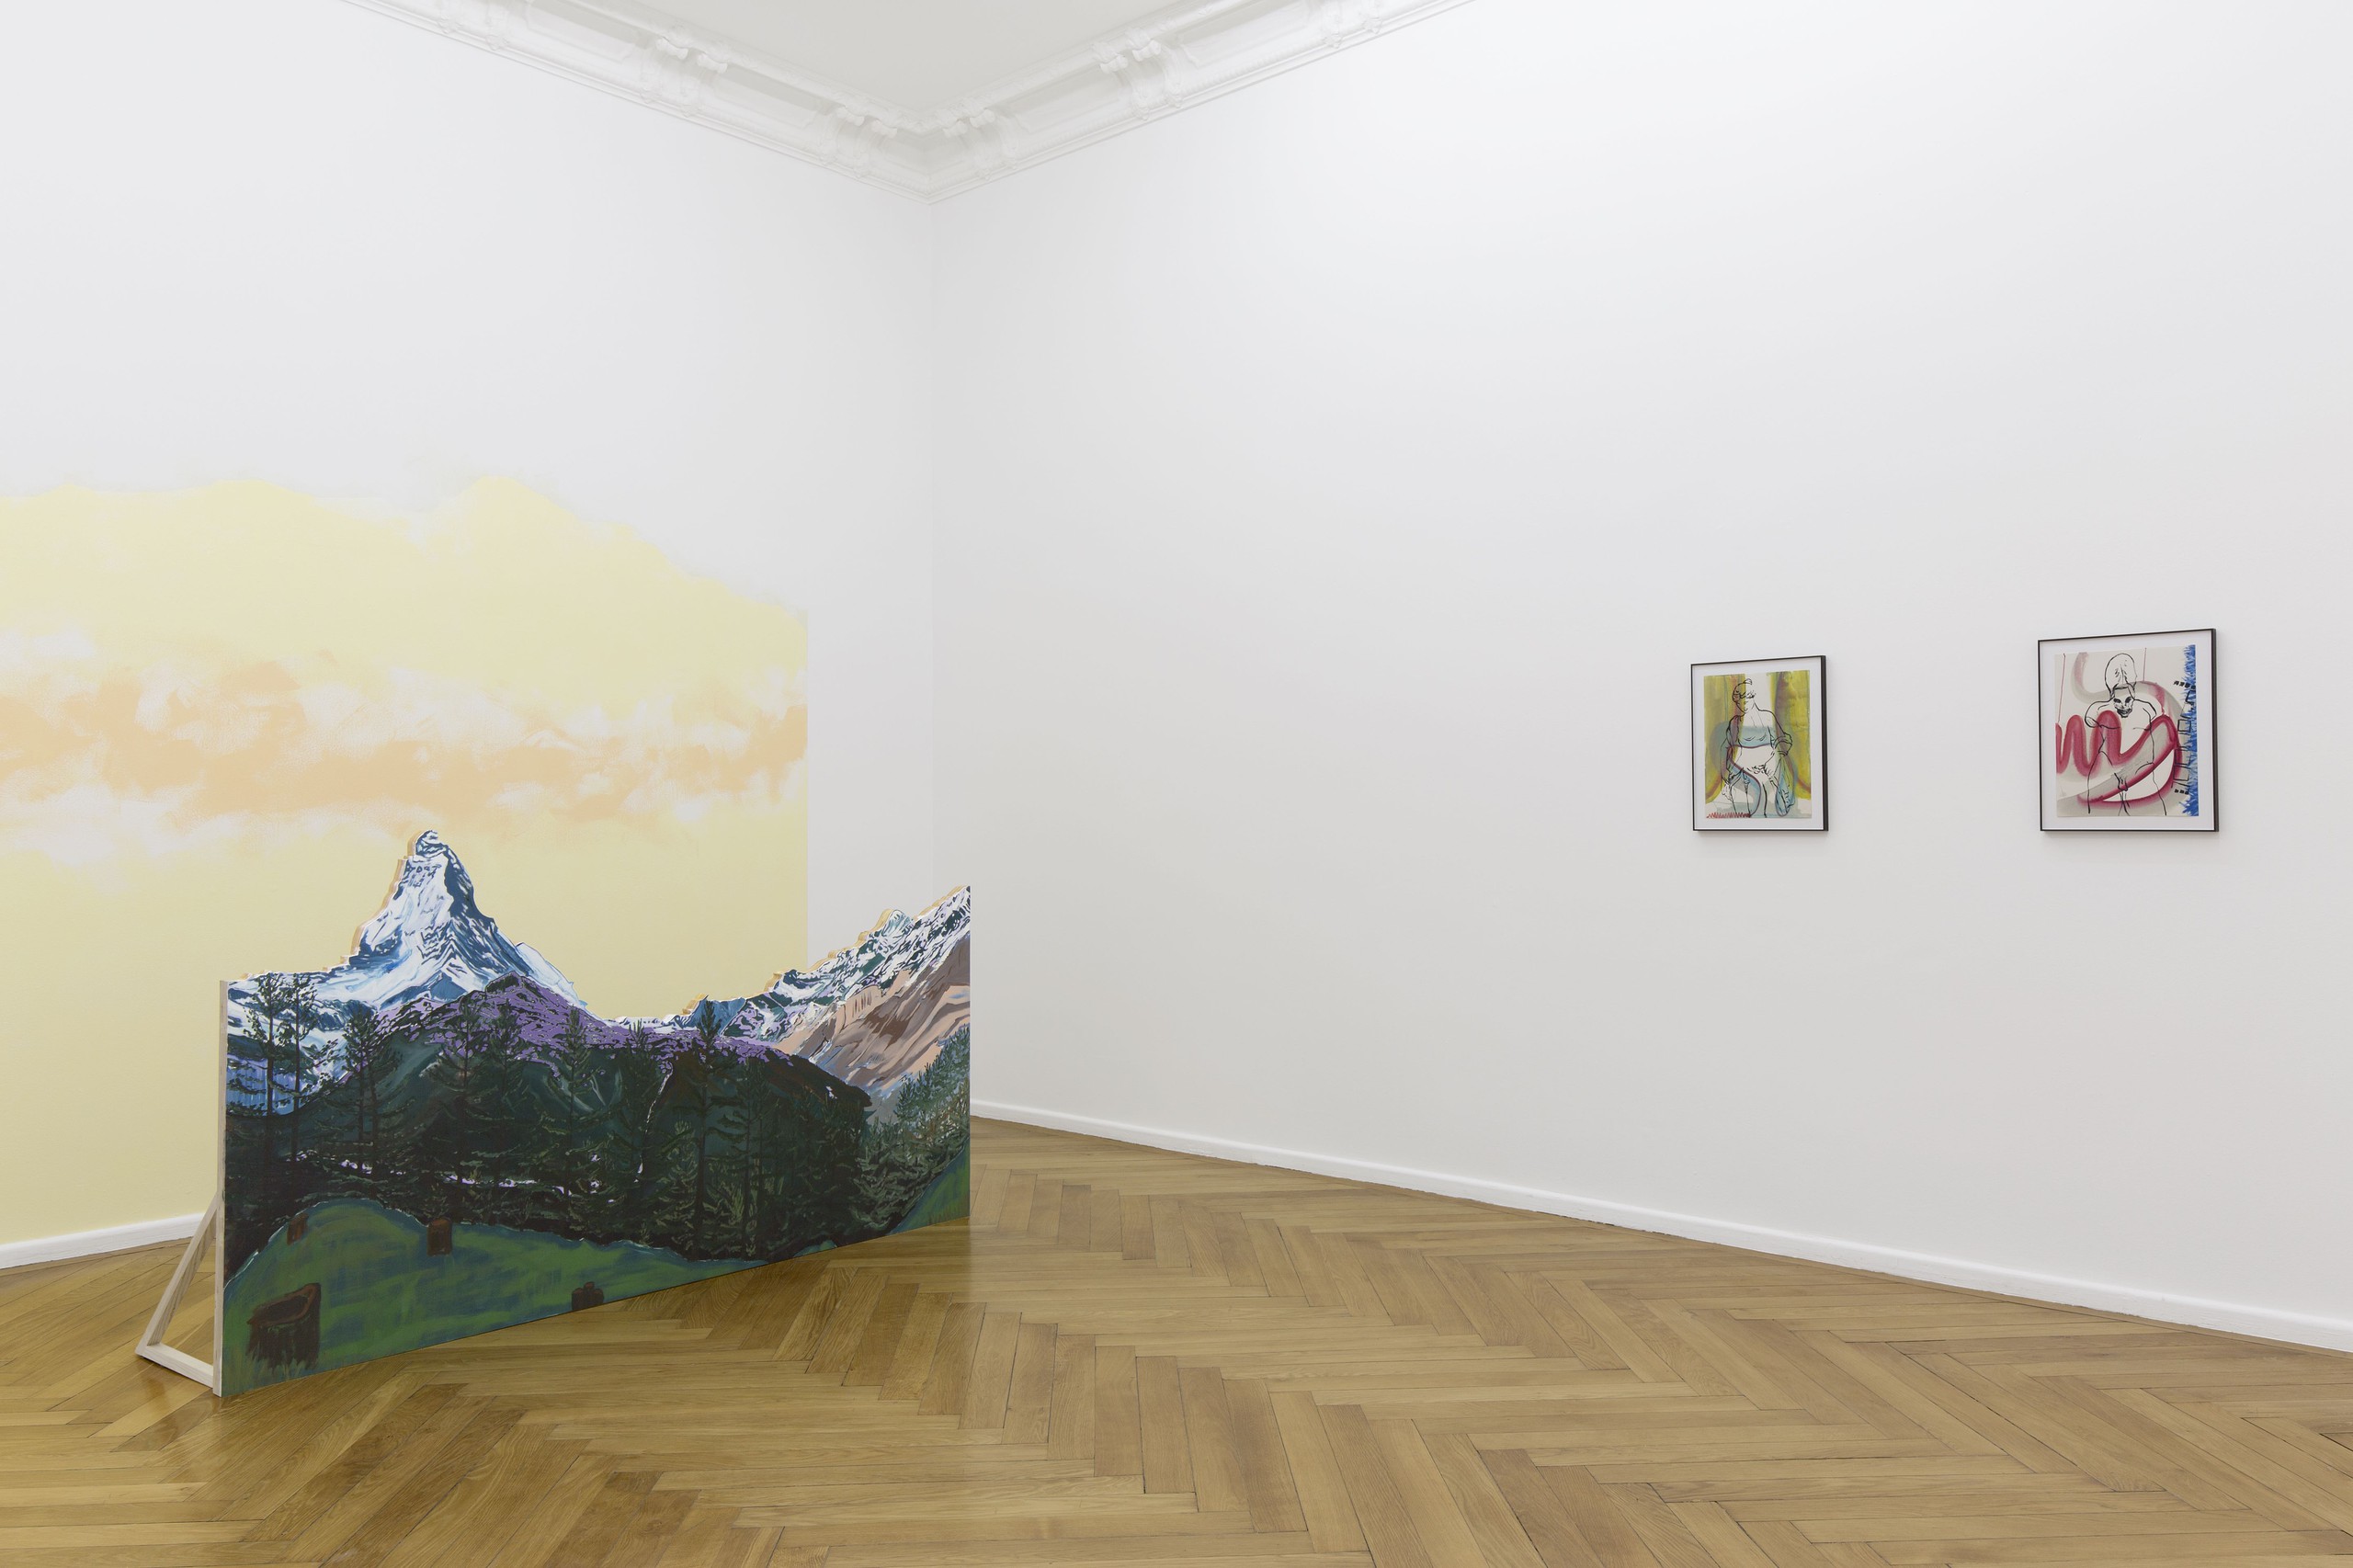 Installation view, Ultra Beauty, Treating Objects Like Women, Société, Berlin, 2015